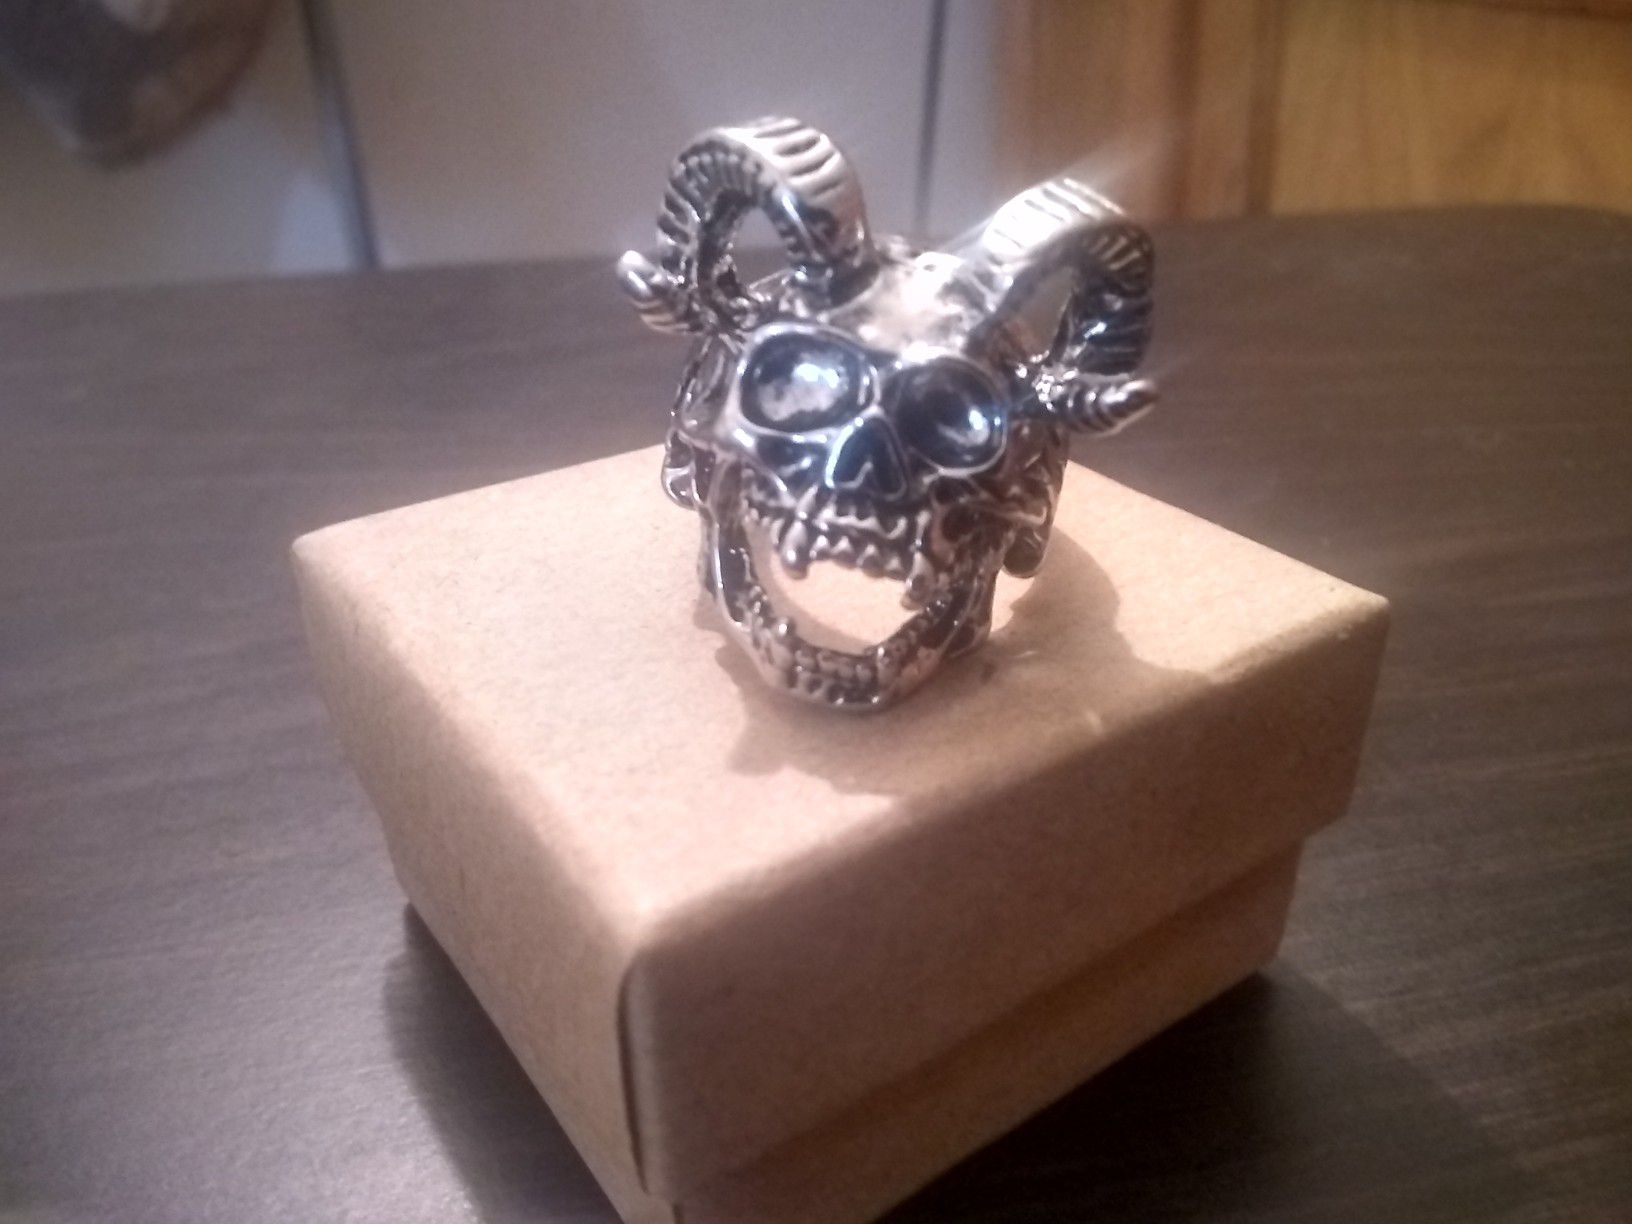 New skull ring $3